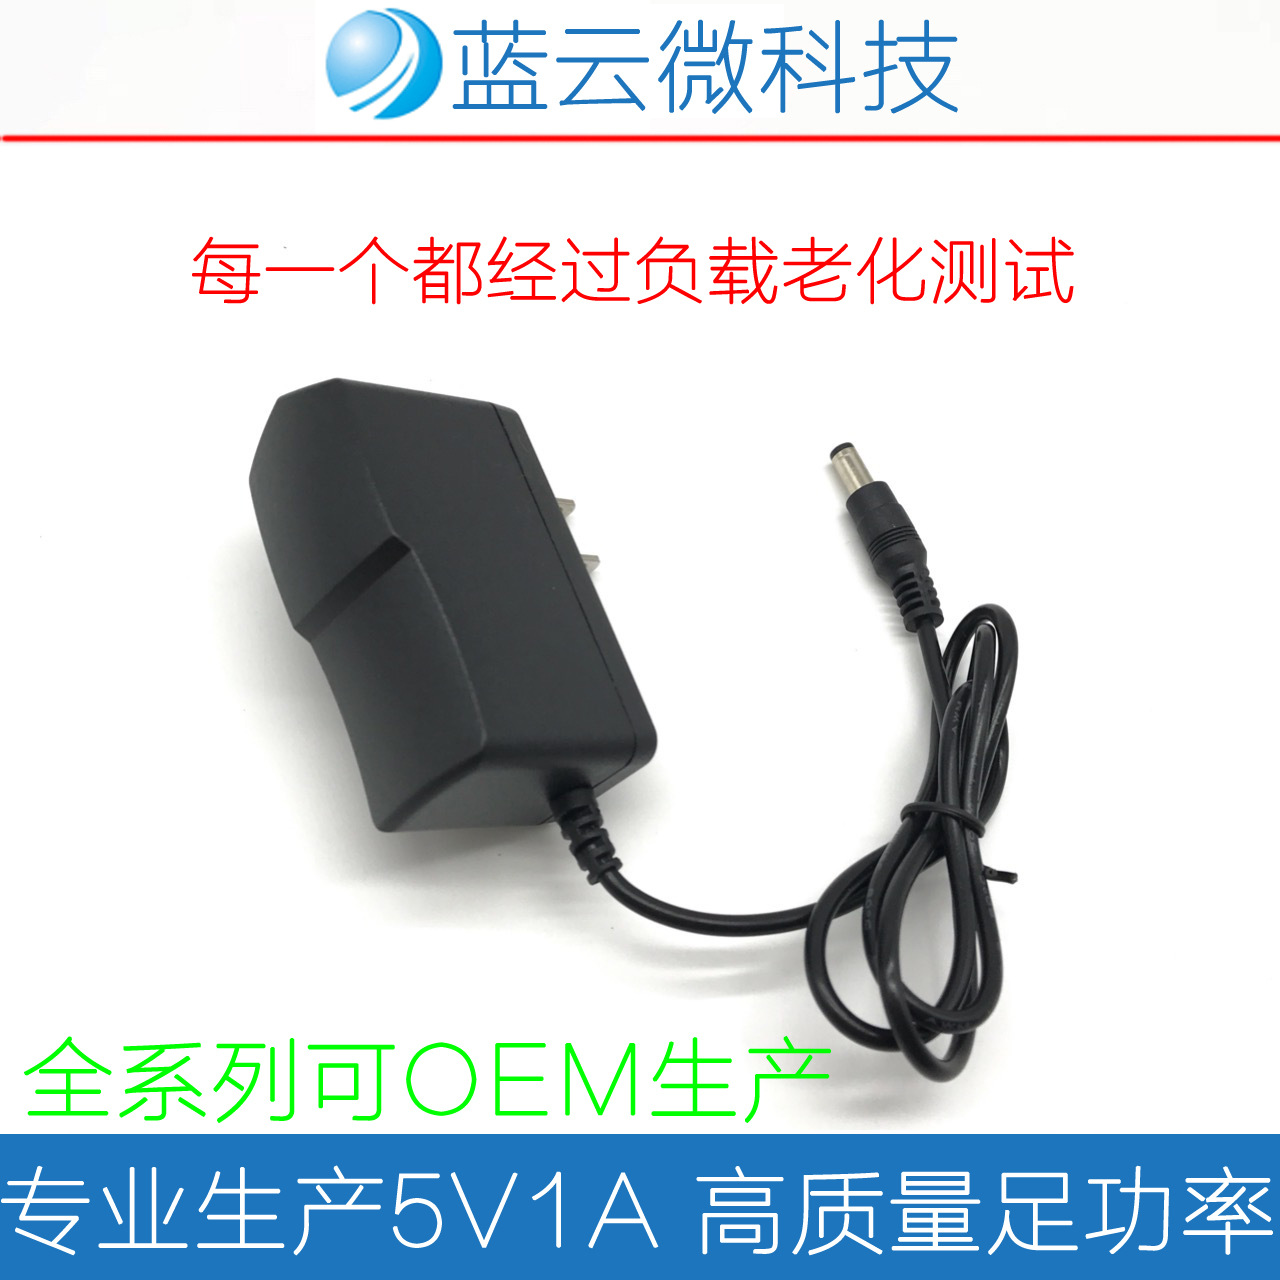 5V1A电源适配器 开关电源 ADSL猫 MODEM 电视机顶盒电源 IC方案